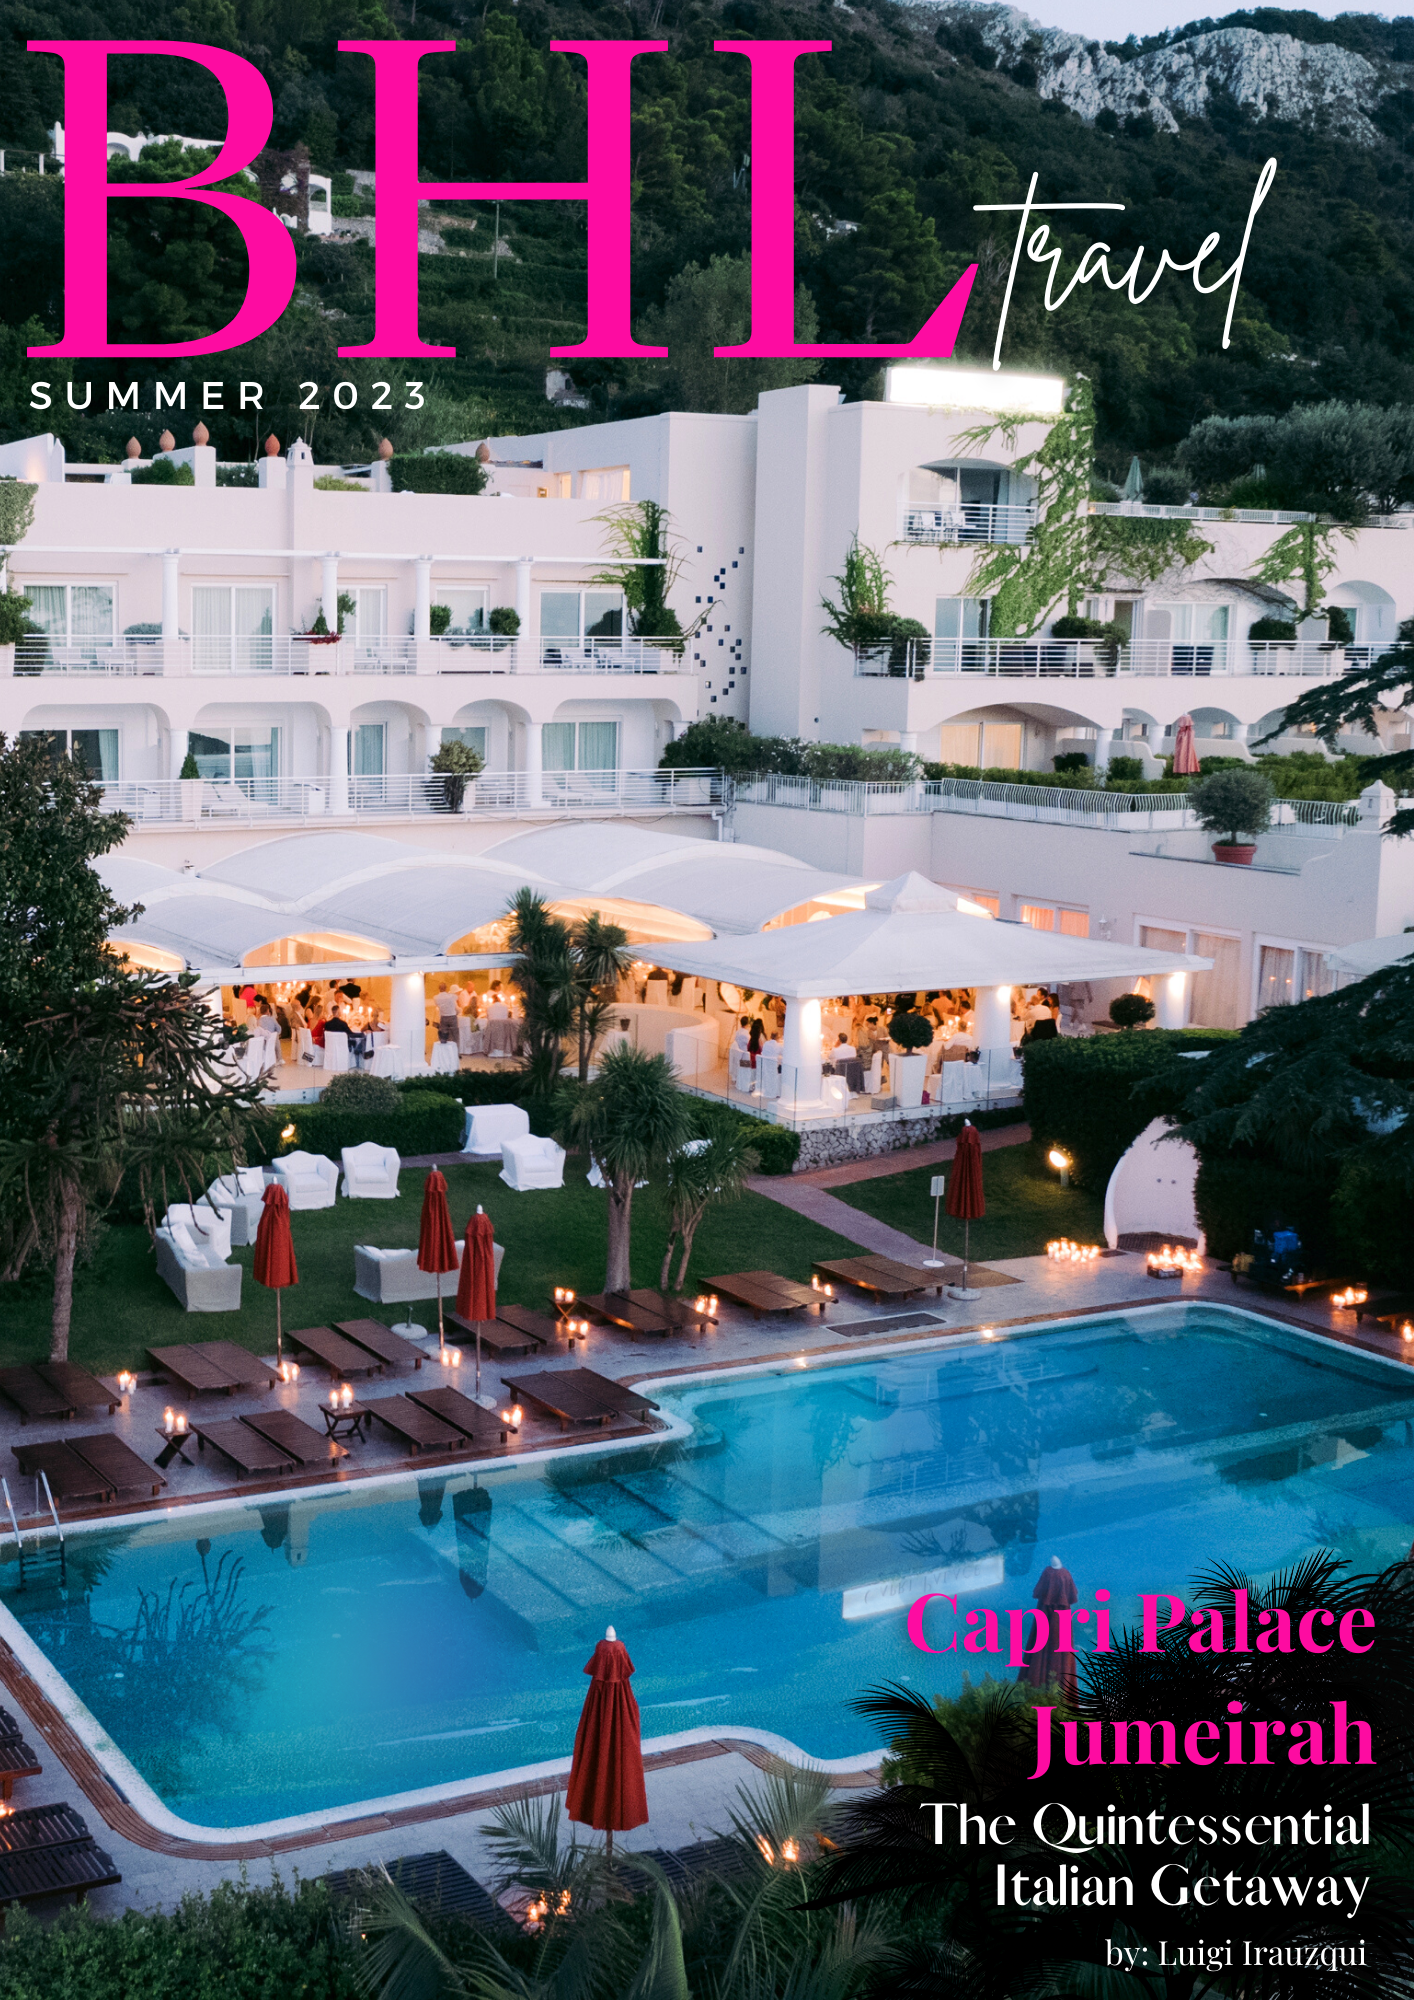 Capri Palace Jumeirah: The Quintessential Italian Getaway